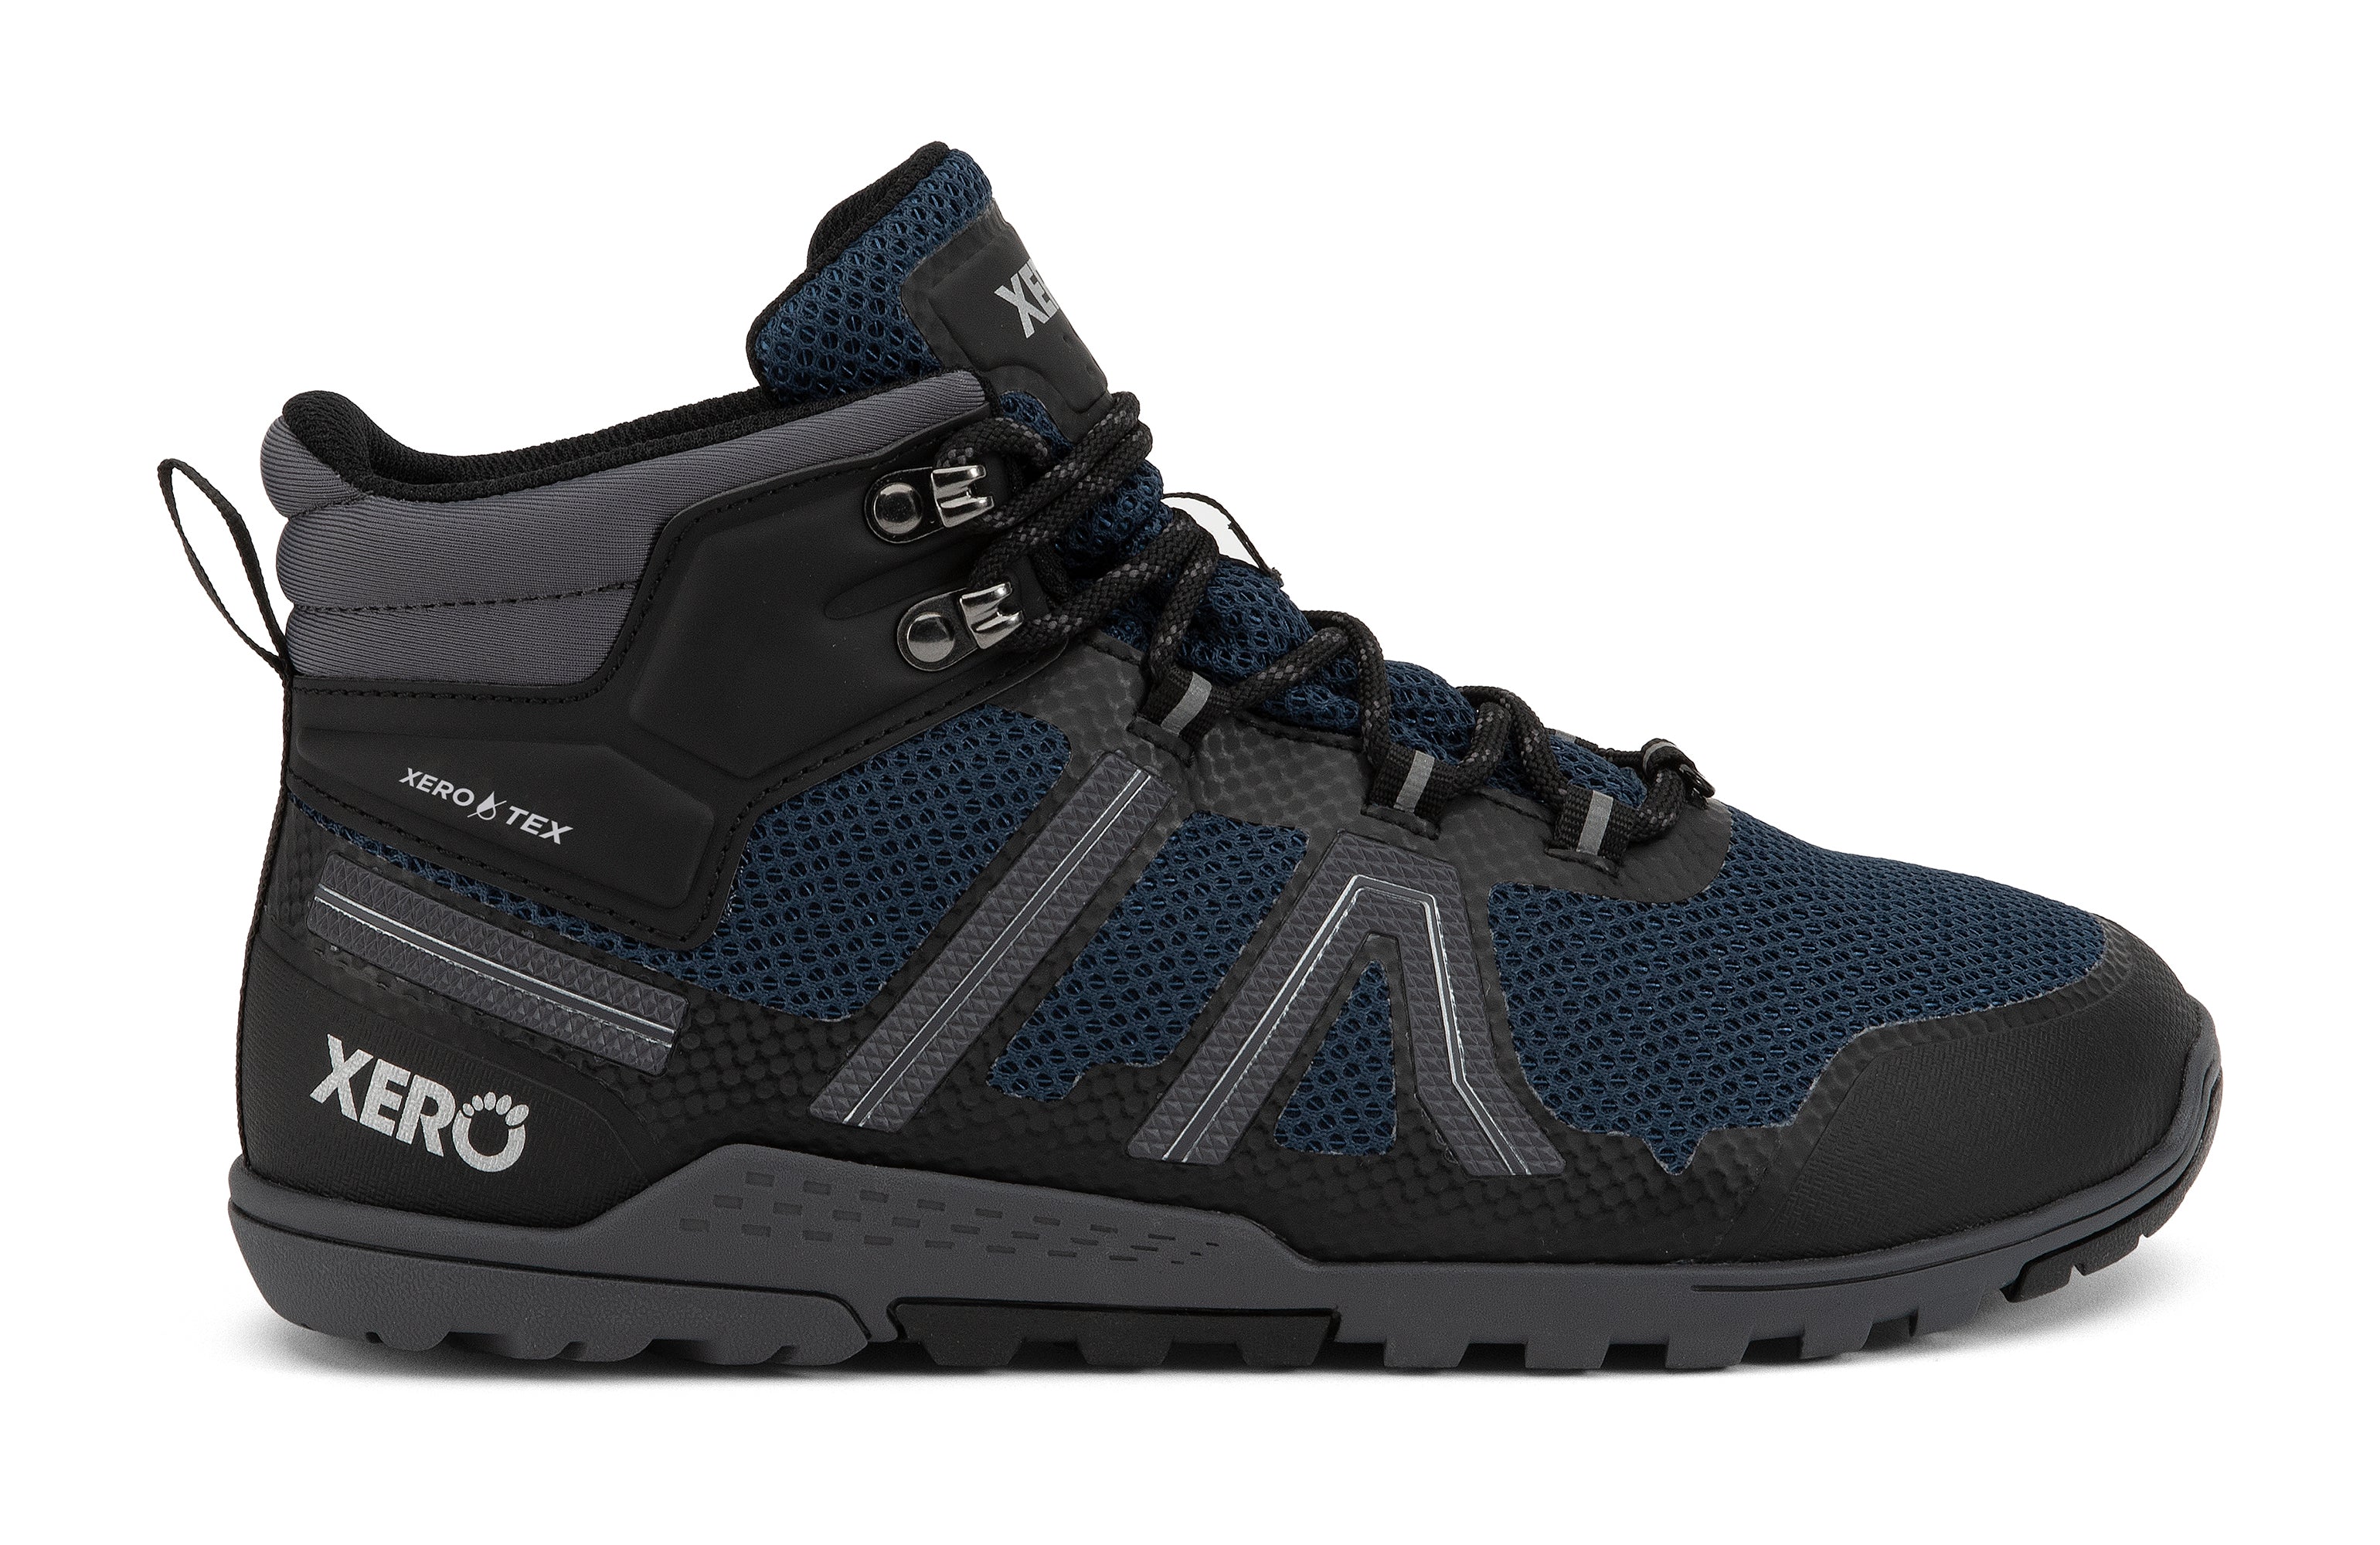 Xero Shoes Xcursion Fusion barfods støvler til mænd i farven moonlit blue / black, yderside